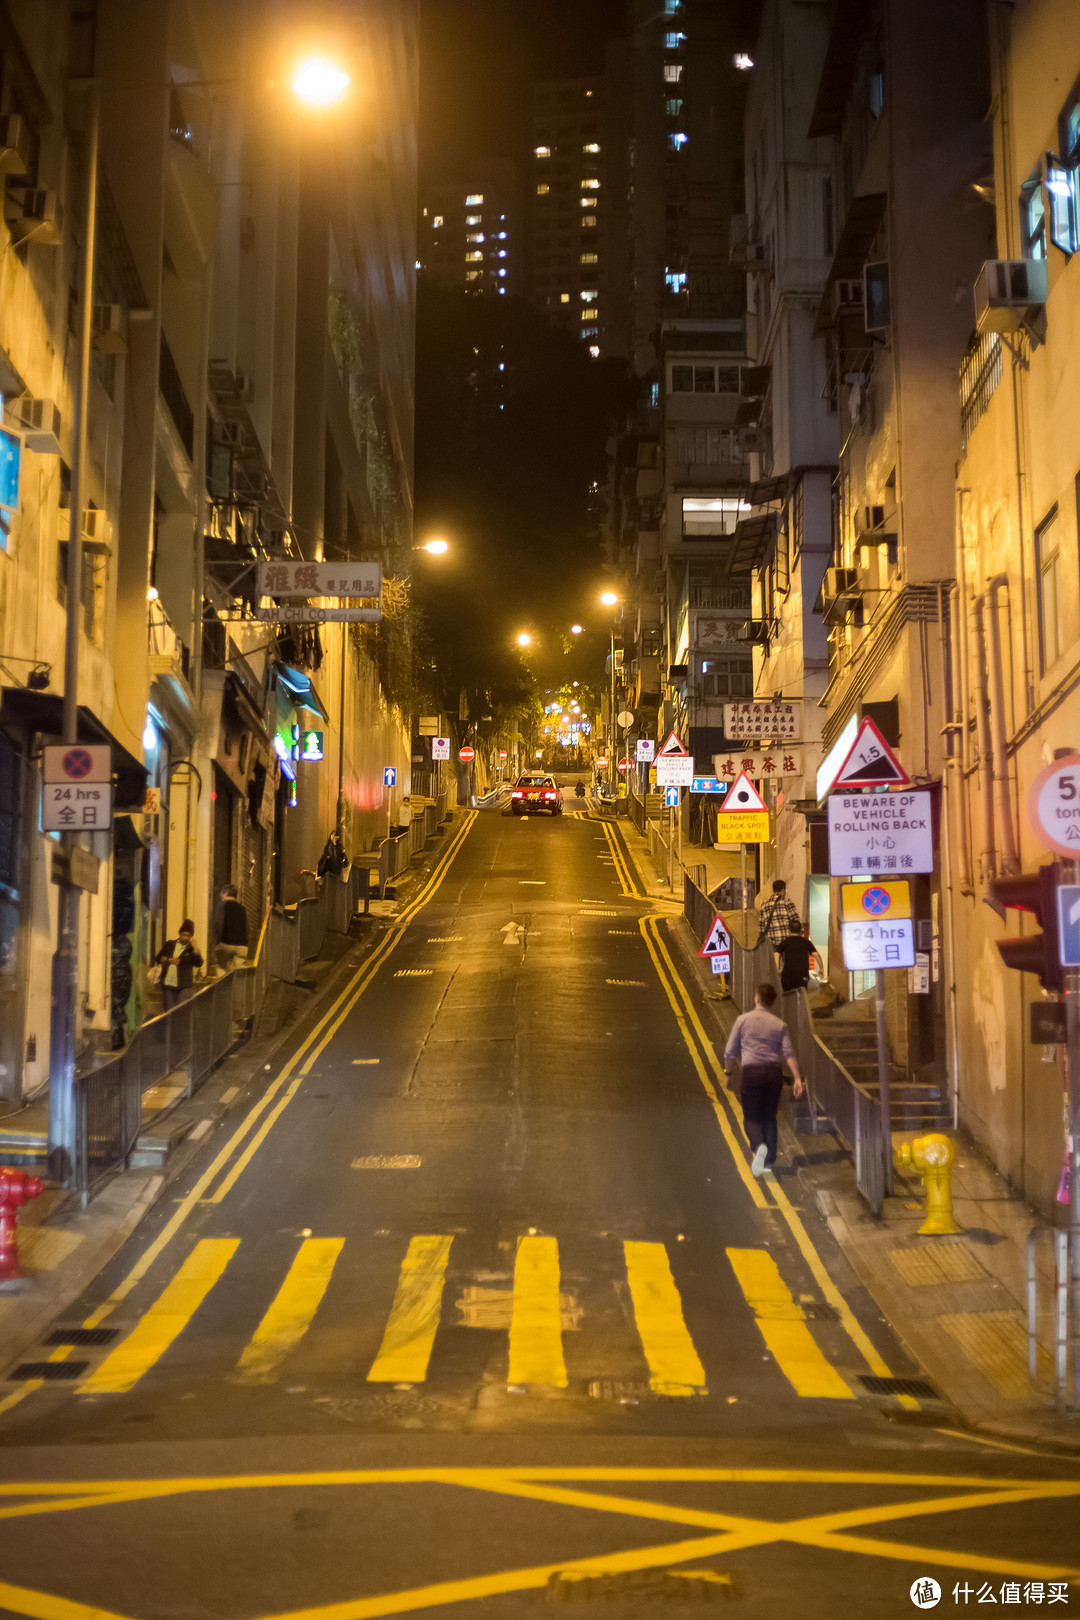 第一次自由行，谈谈我心中的香港